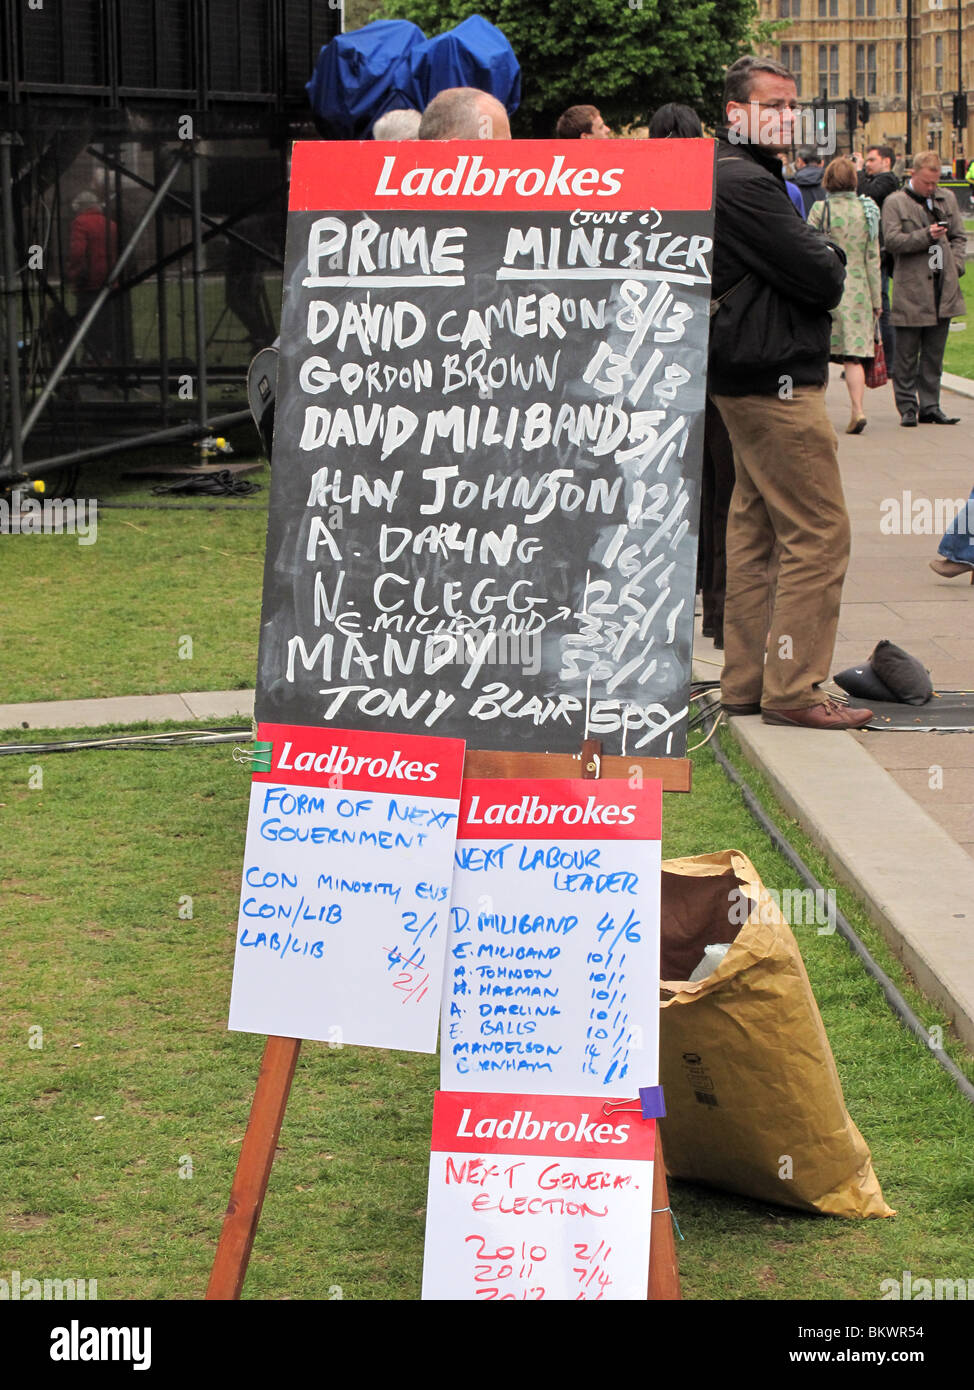 Il primo ministro generale elezione 2010 Ladbrokes appeso il Parlamento la copertura dei media Foto Stock